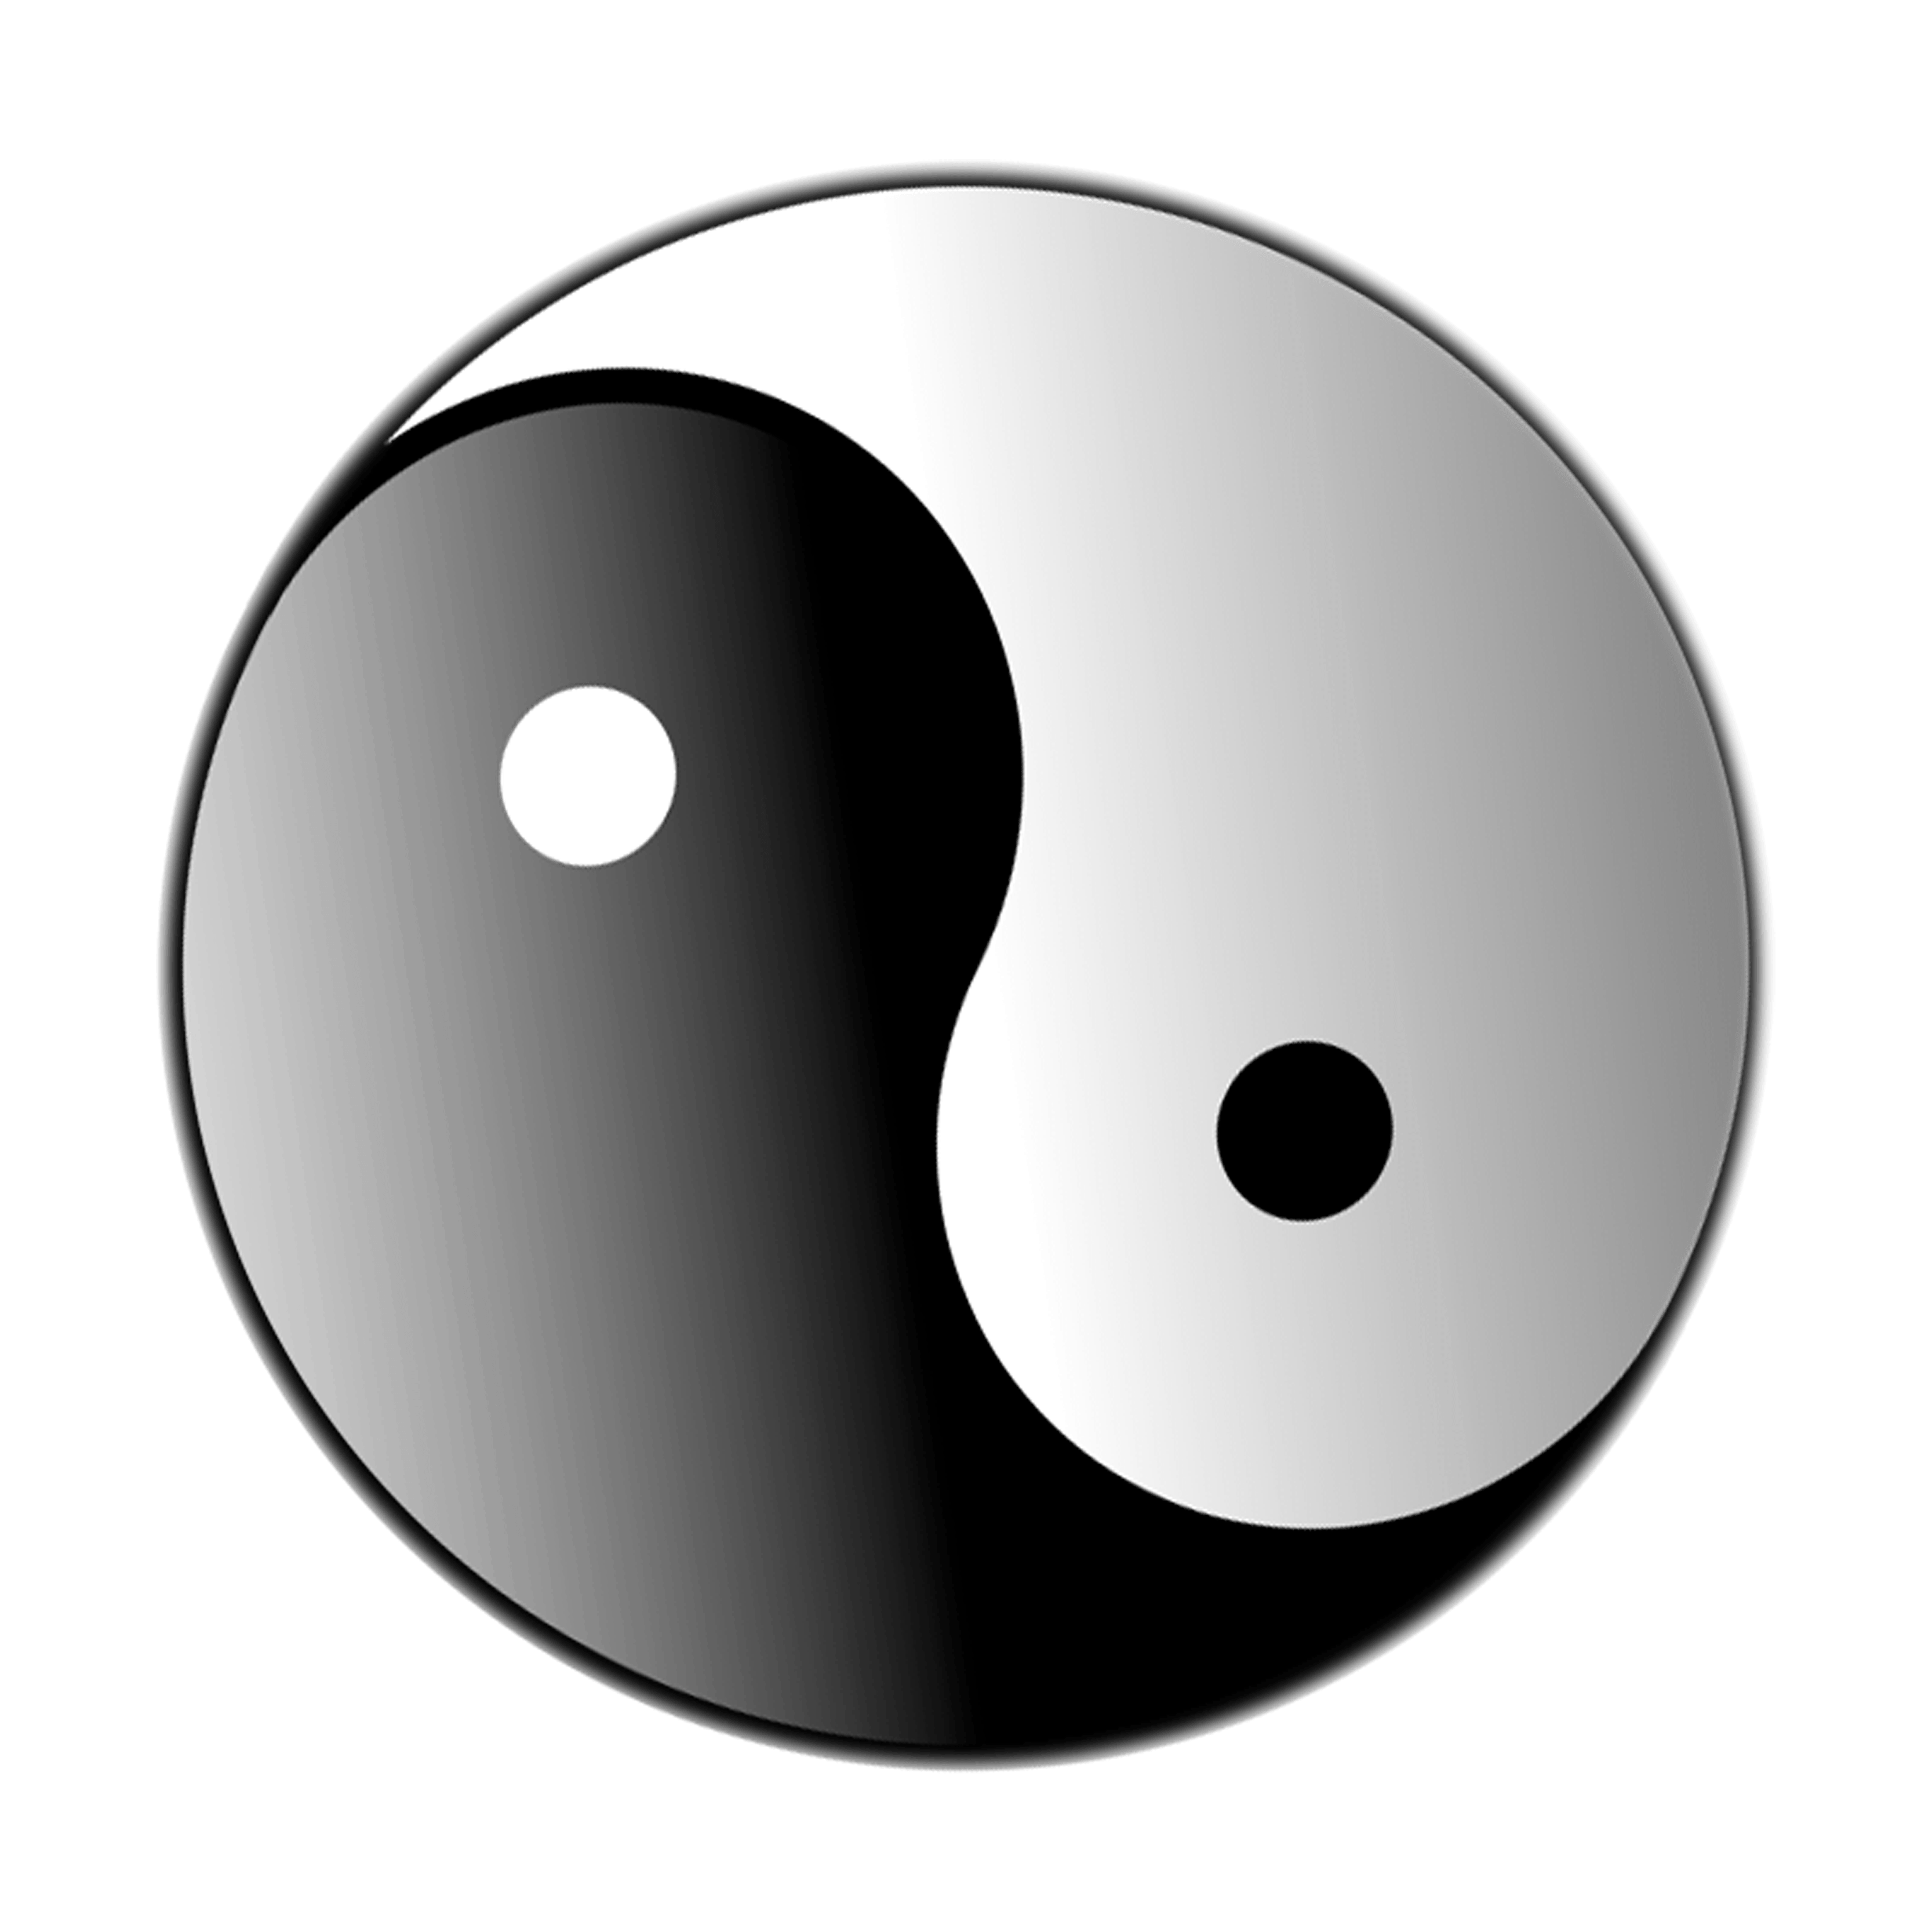 Ying Yang Logo - Yin Yang Logo - Clipart library - Clip Art Library